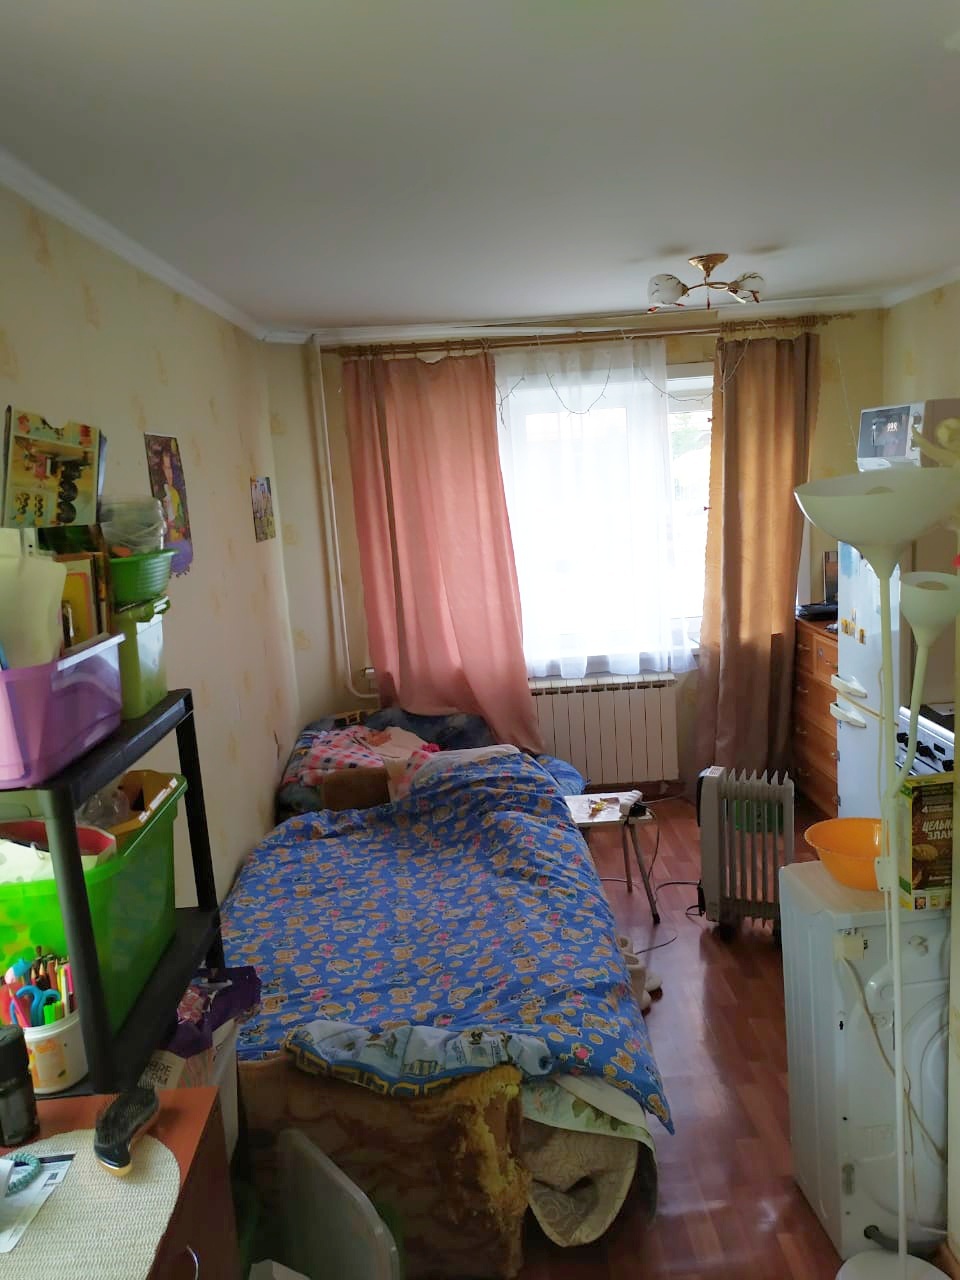 Анастасия прожила в квартире площадью 19 квадратных метров 4 года